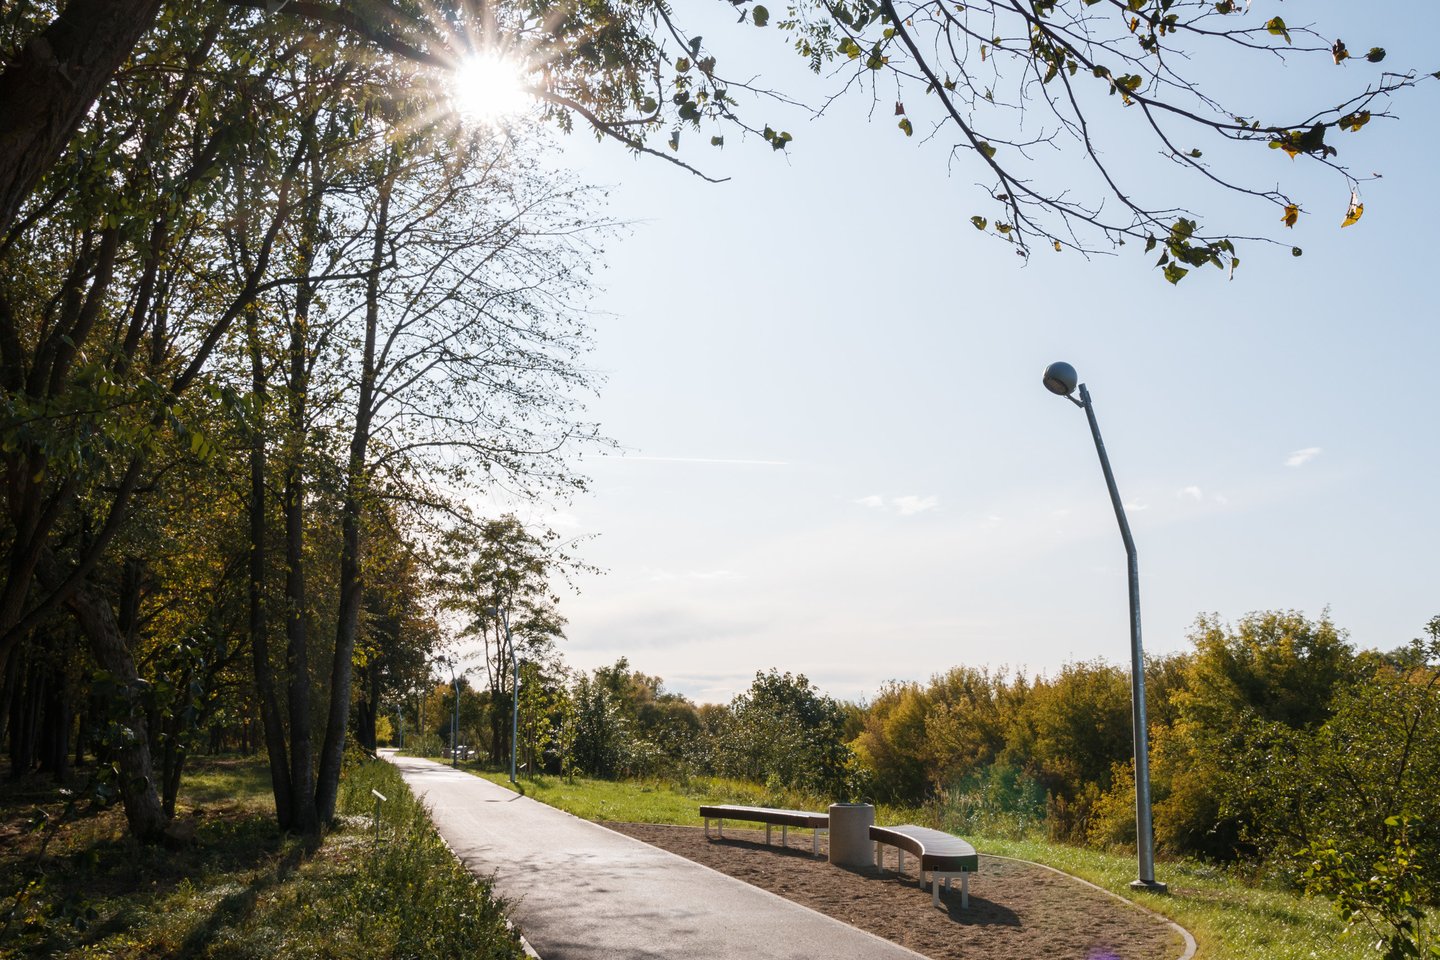 Jonava netrukus taps tikra dviratininkų sostine, nes nuolat plečia dviračių takų tinklą, kuris vingiuoja vaizdingais gamtos kampeliais, istorinėmis miesto vietomis ar naujai kuriamais parkais.